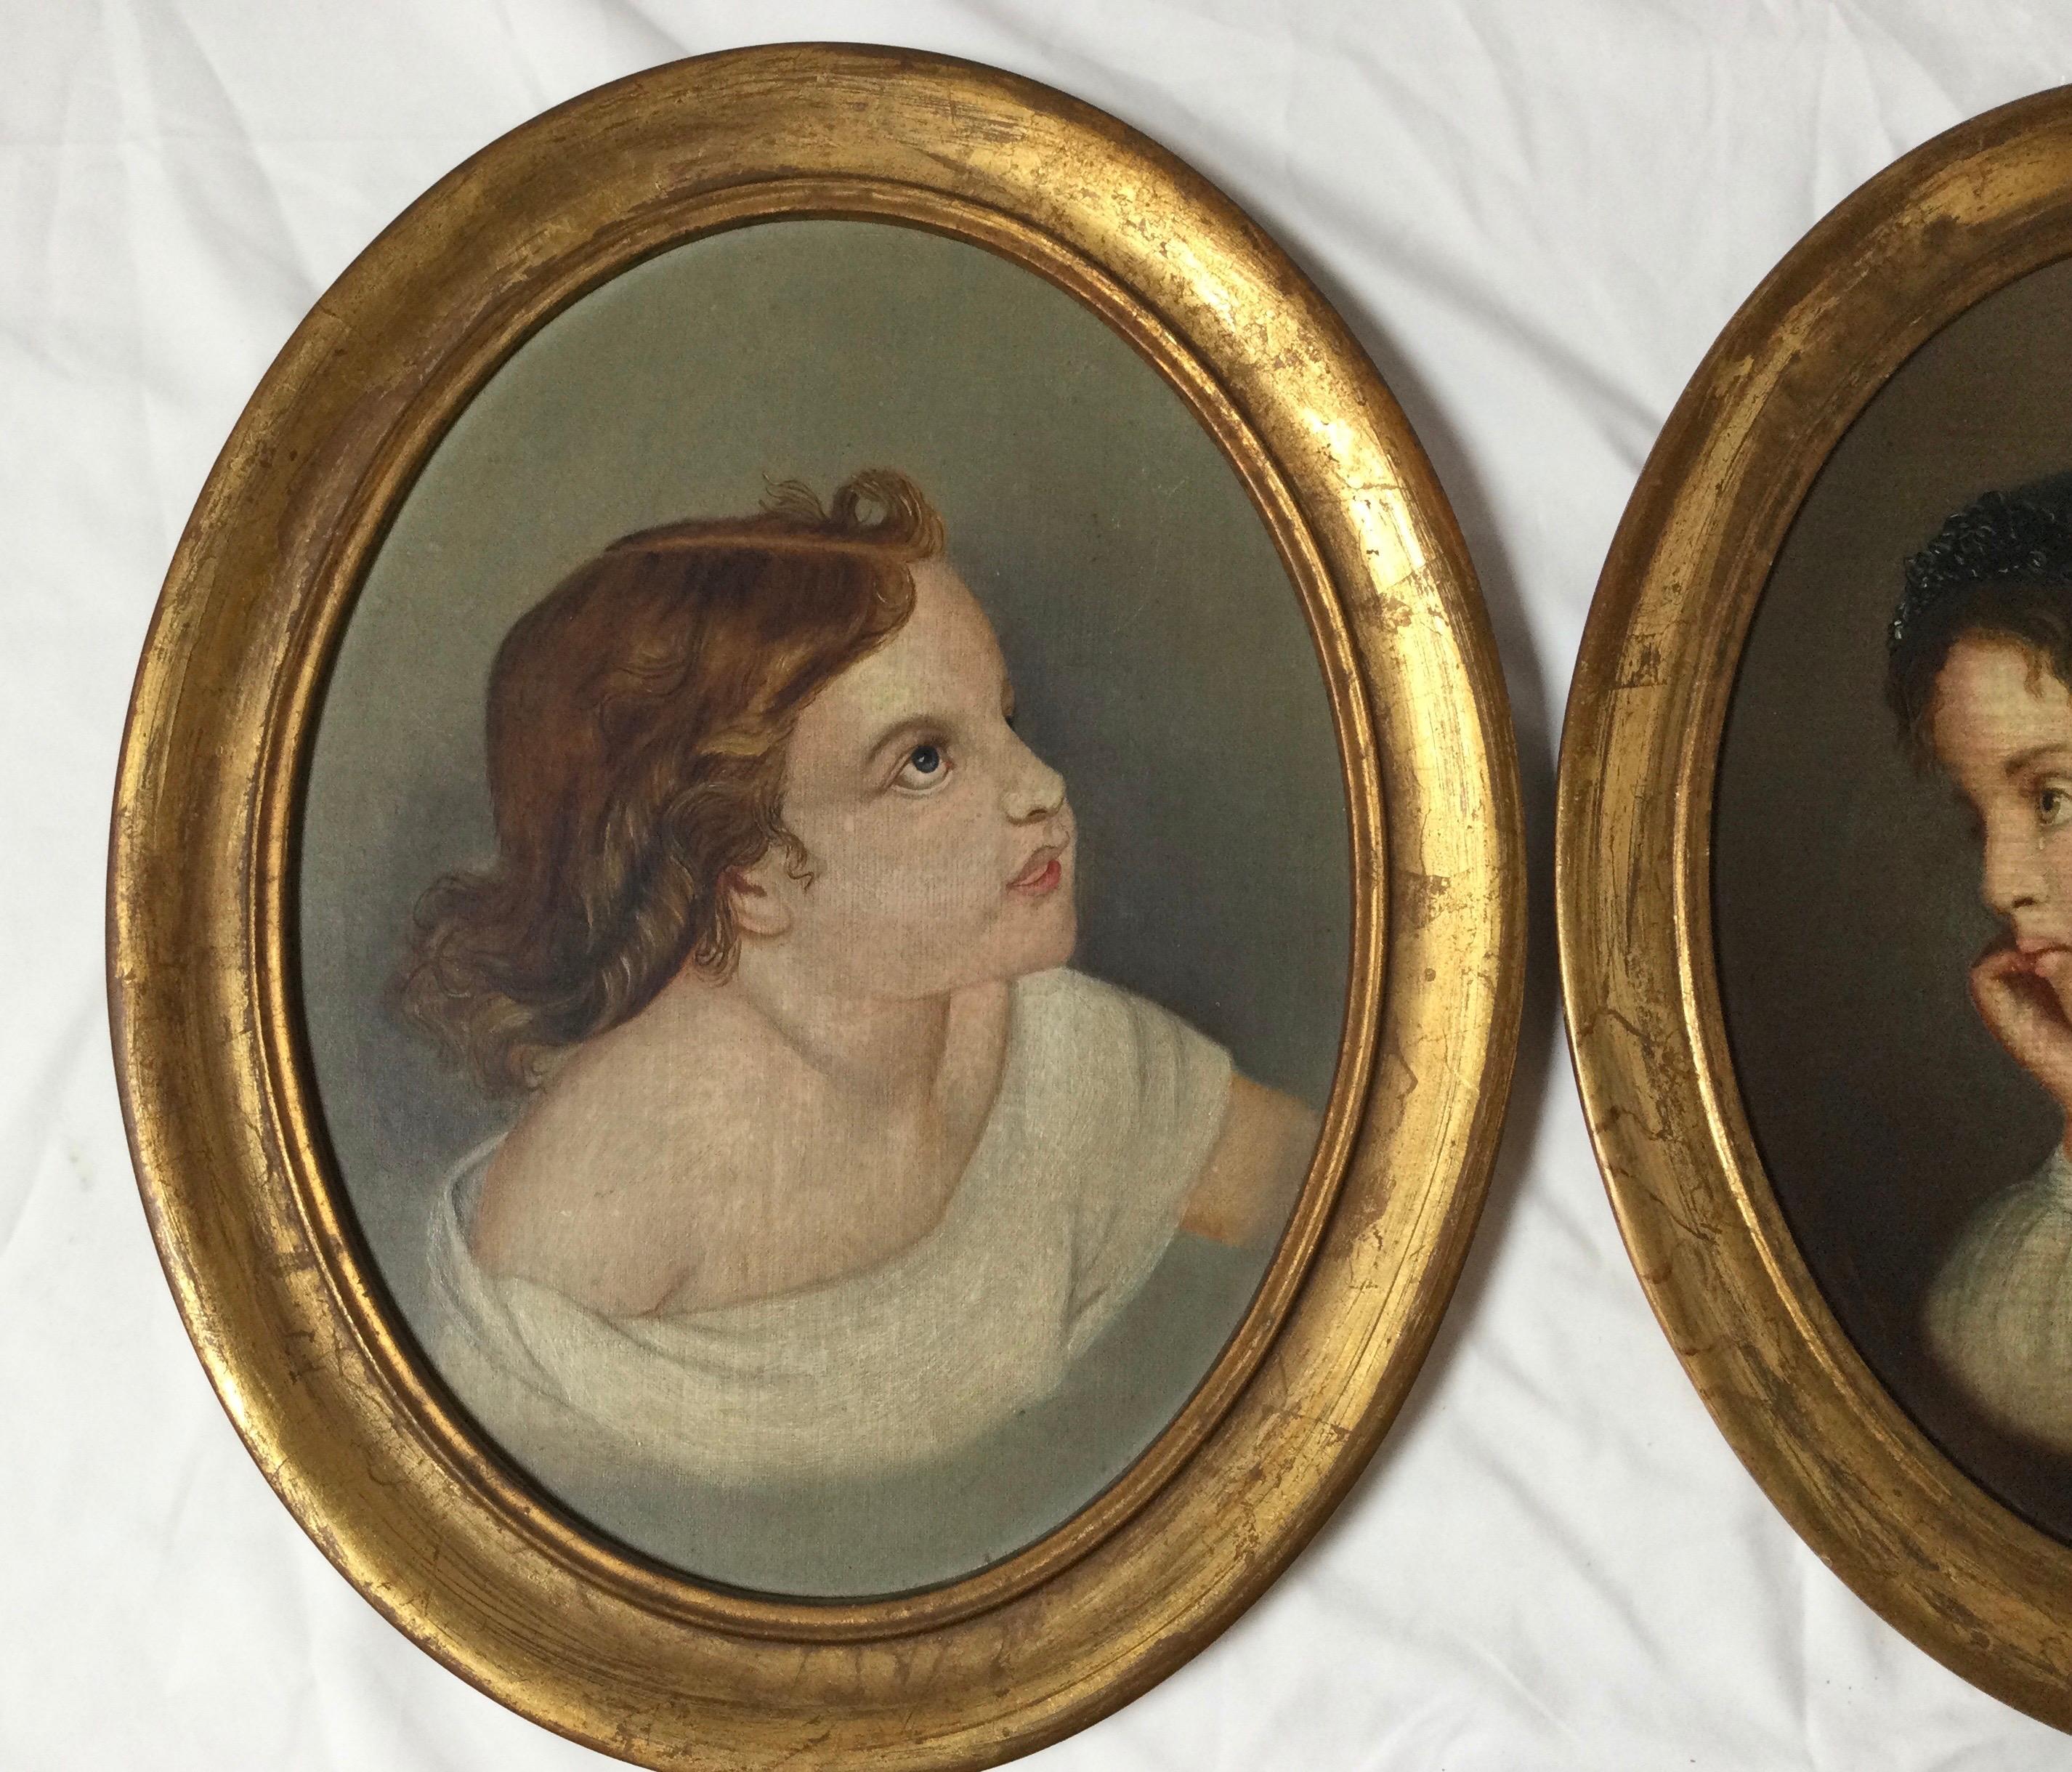 Une paire de portraits ovales encadrés et dorés d'enfants, probablement des frères et sœurs, datés au dos de 1800. État original bien entretenu.